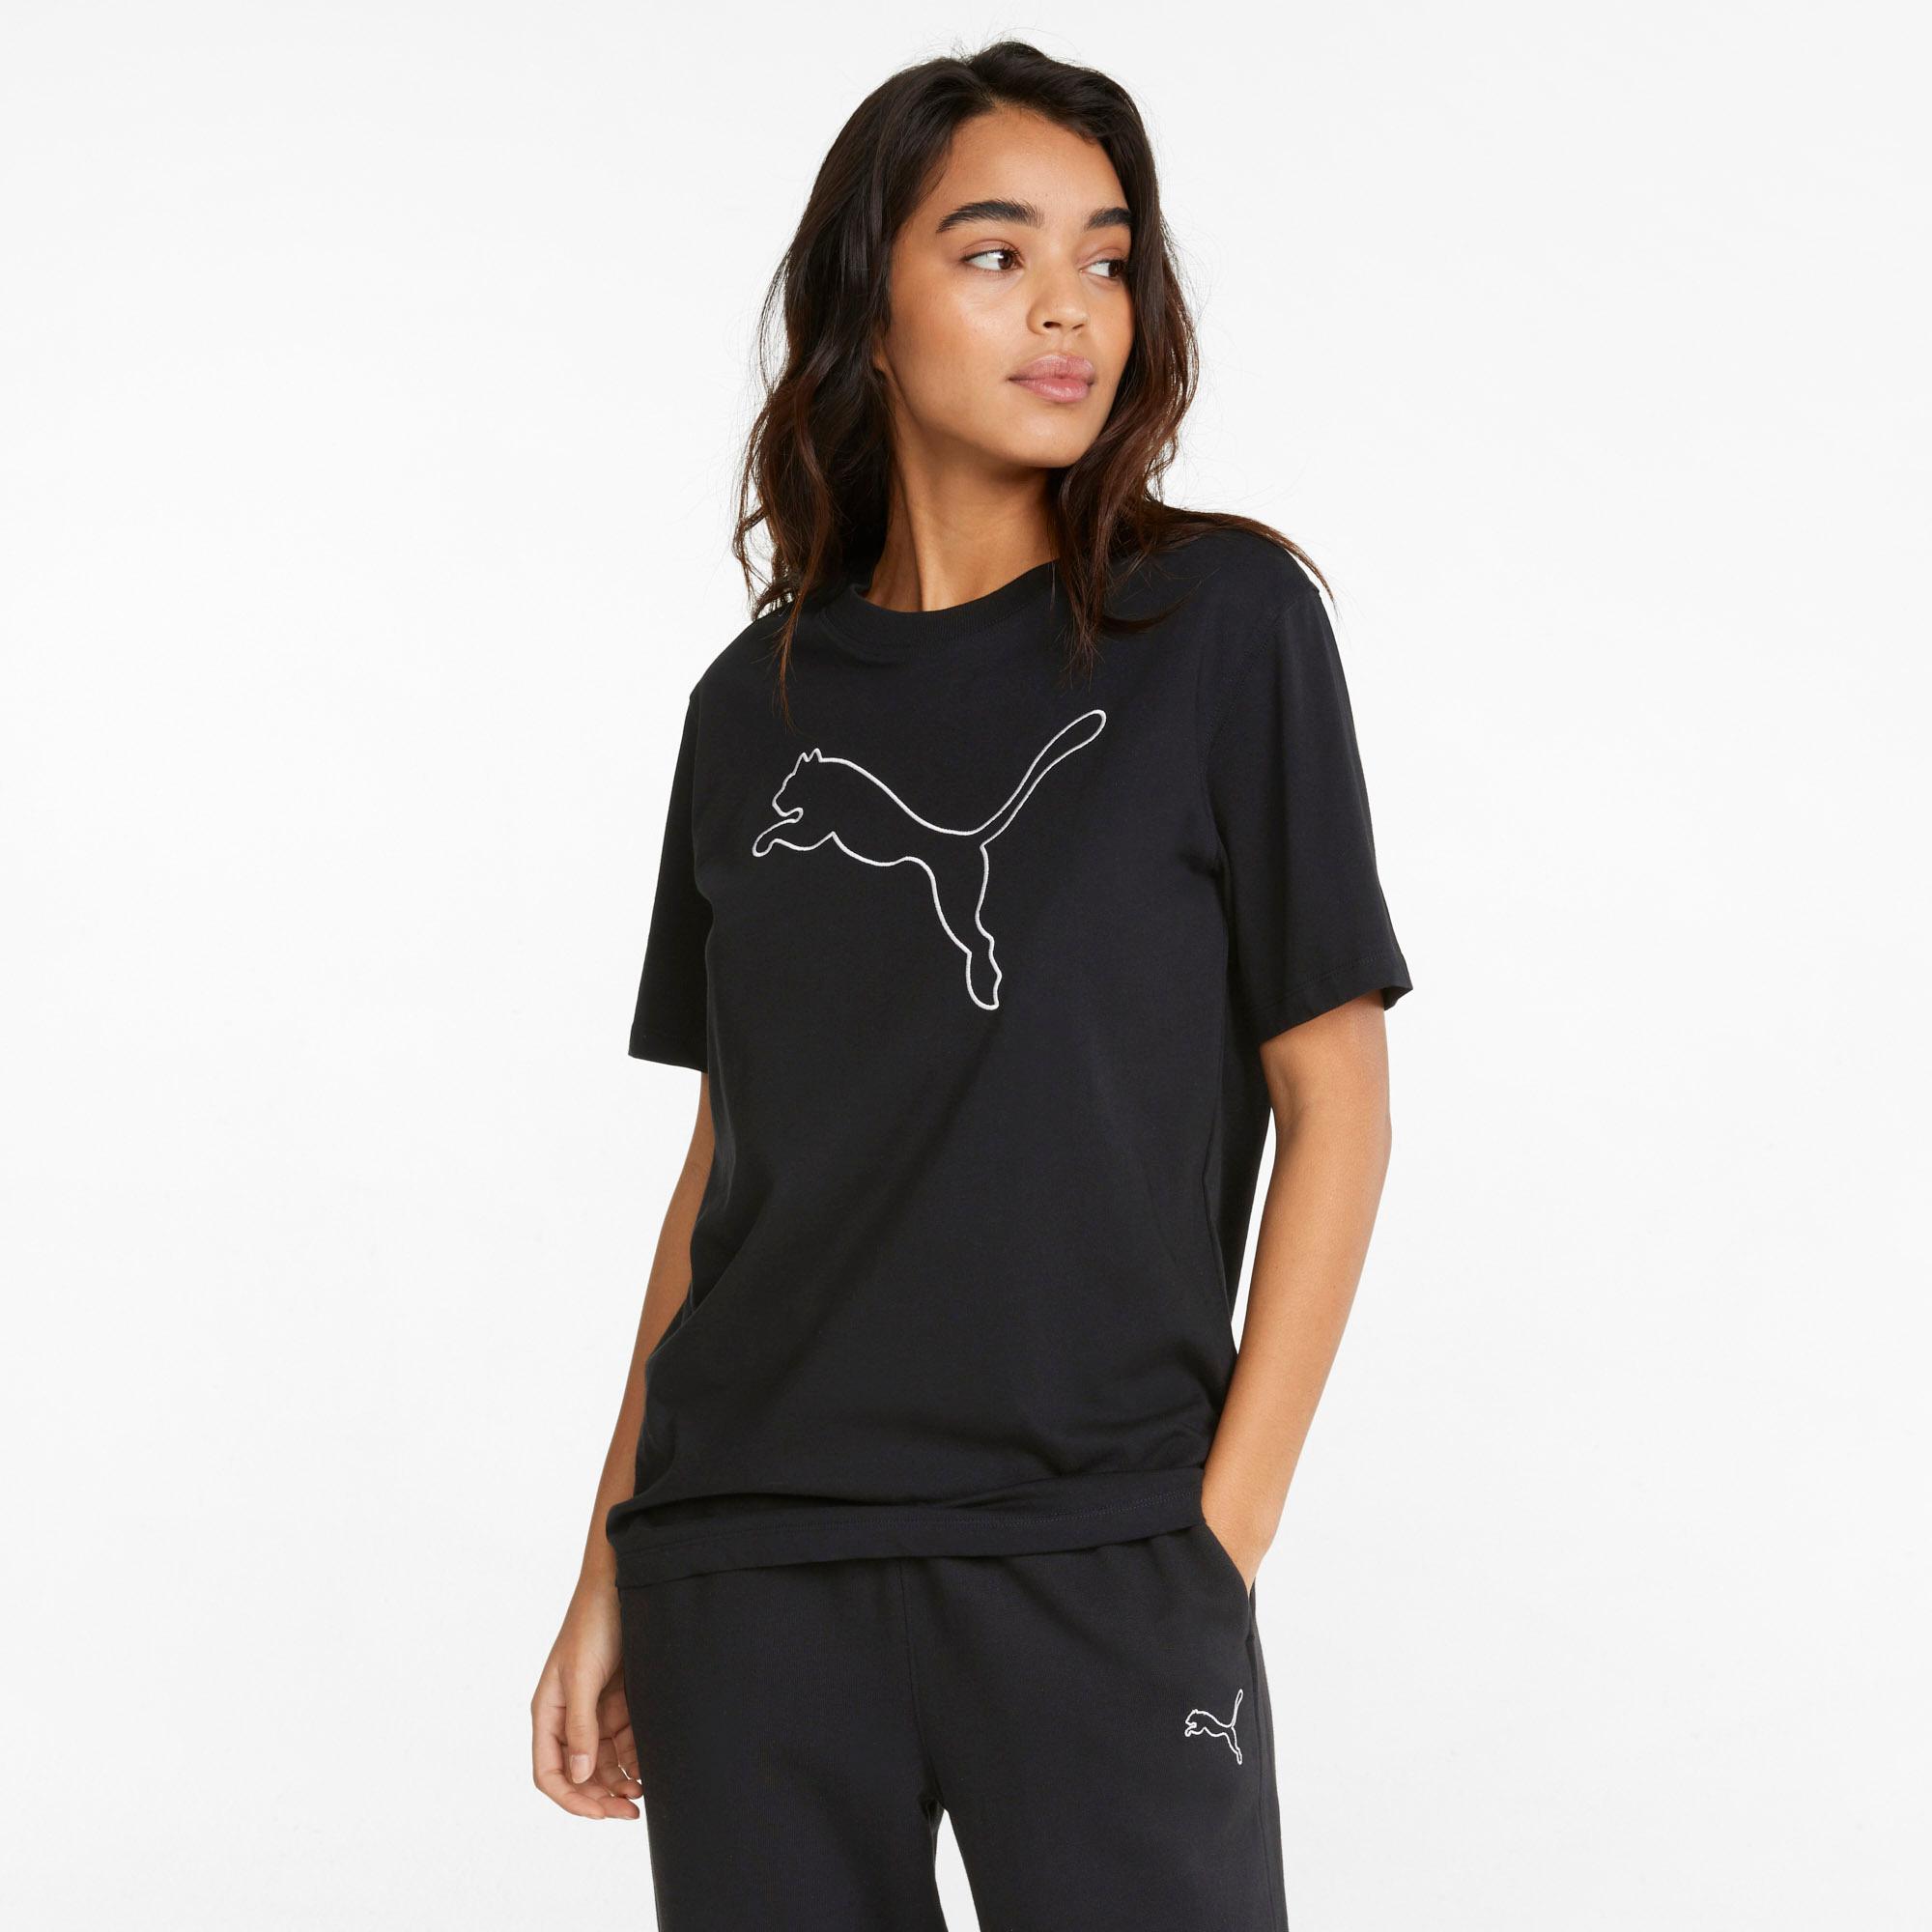 PUMA HER T-Shirt Damen von SportScheck kaufen im Shop puma Online black